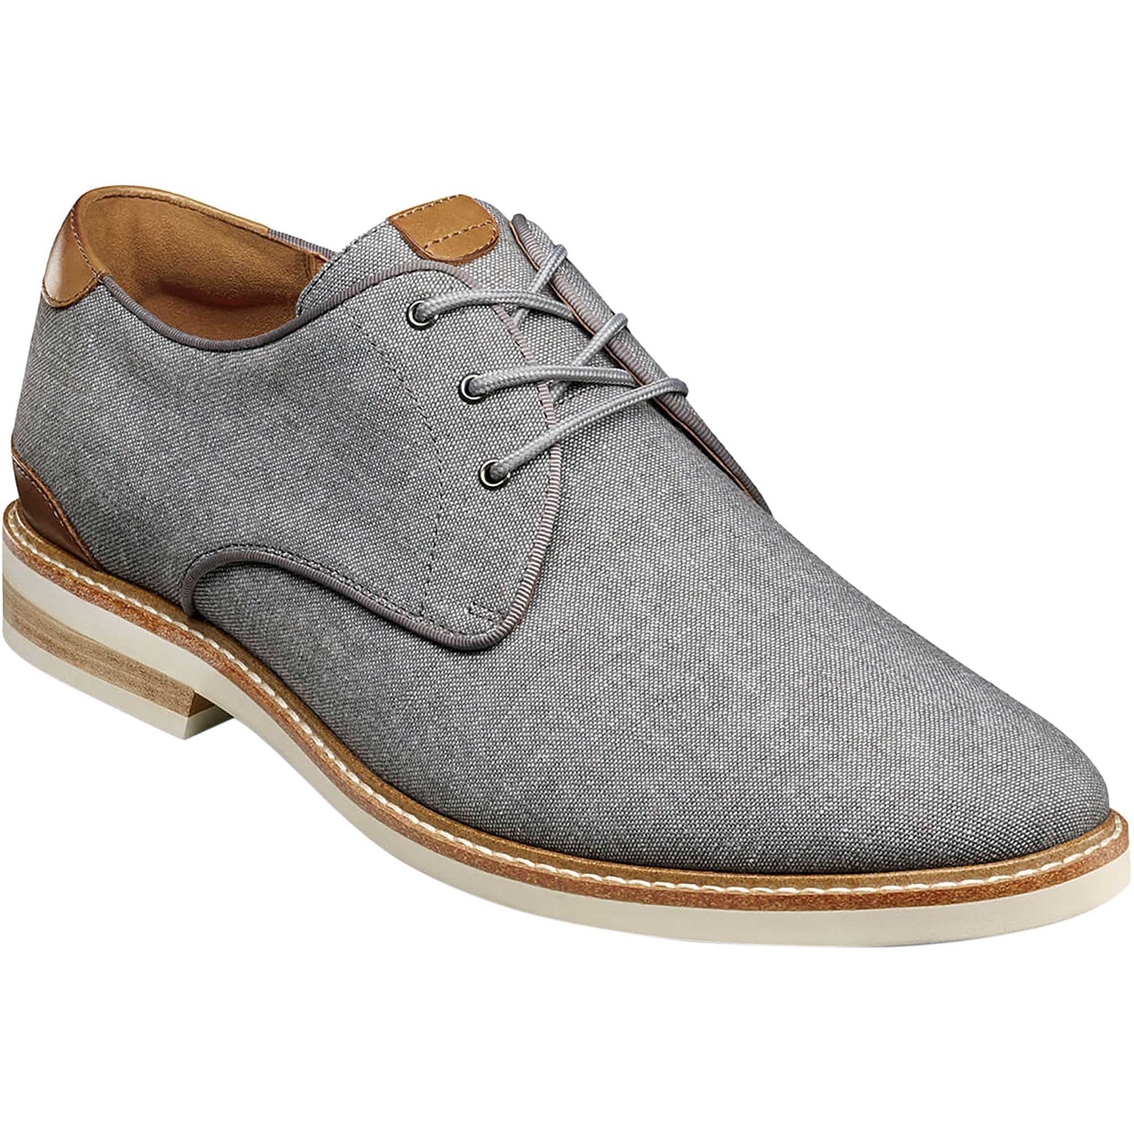 Florsheim Highland Canvas Plain Toe Oxford Shoes | Casuals | Shoes ...